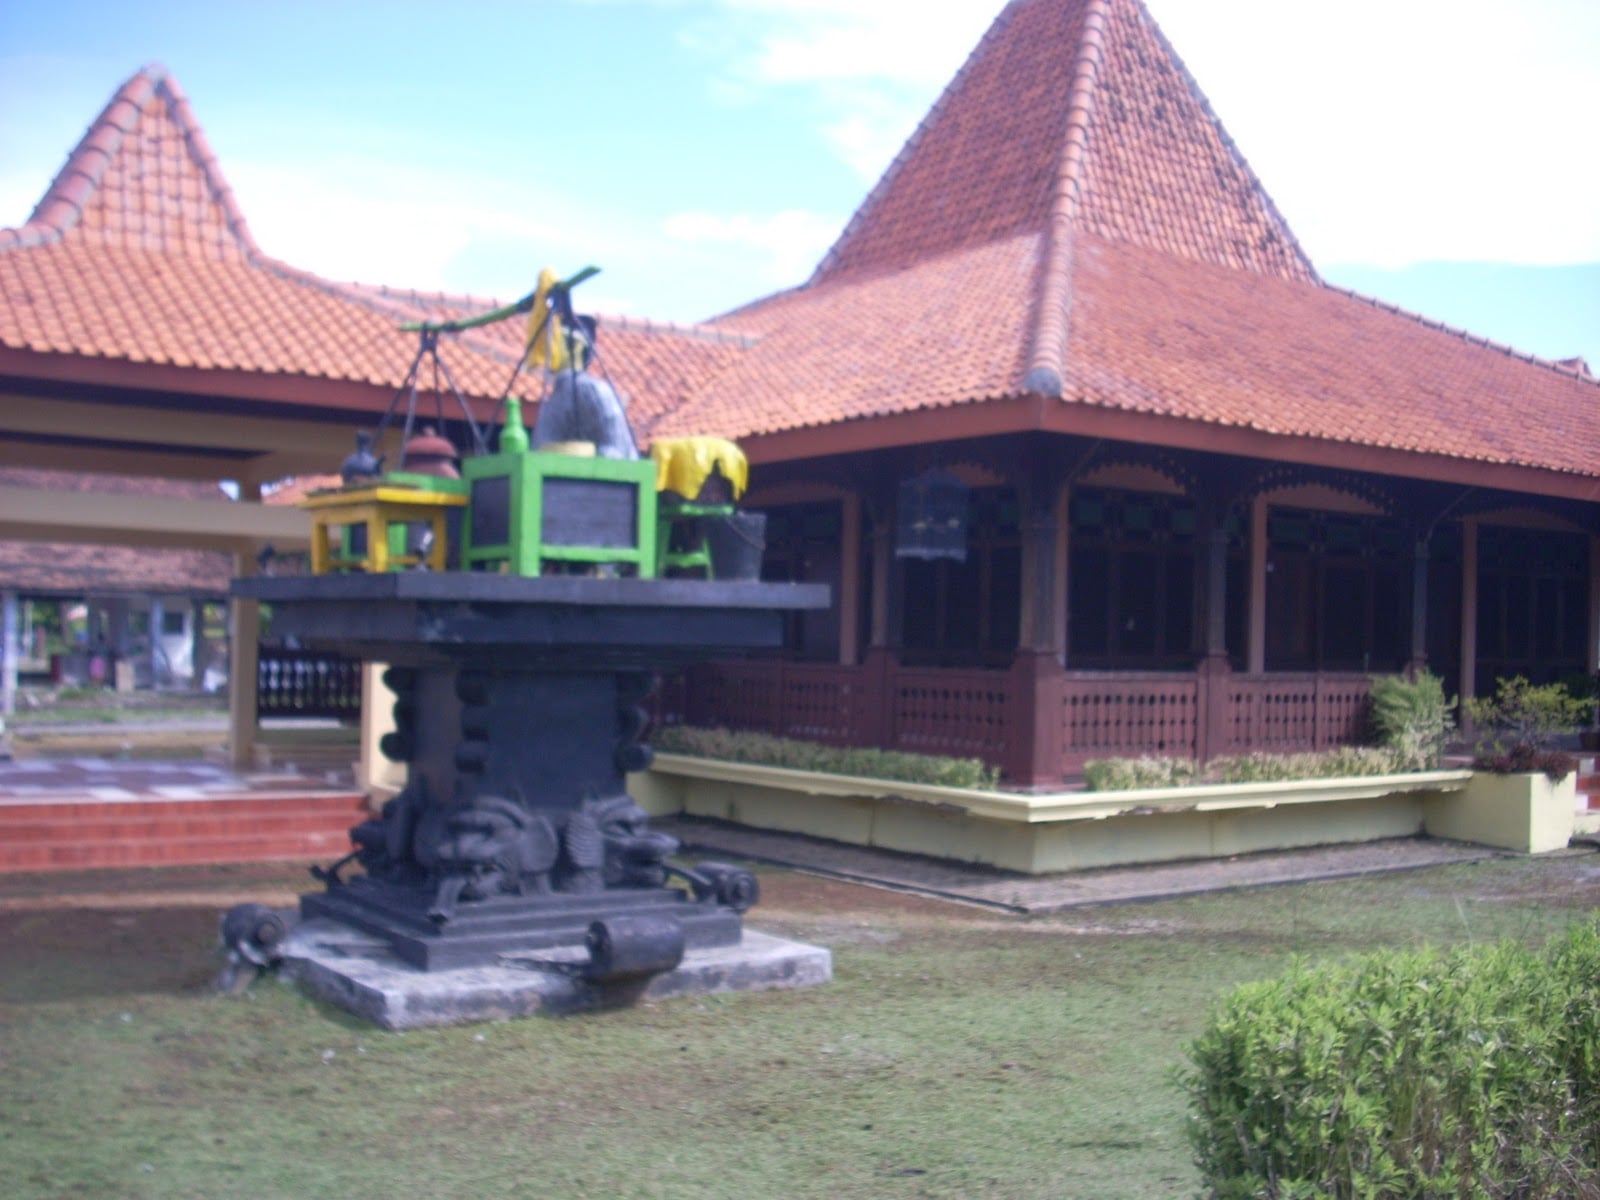 Terbaik 21 Gambar Rumah Adat Joglo Yogyakarta 76 Dalam Desain Interior Untuk Renovasi Rumah dengan 21 Gambar Rumah Adat Joglo Yogyakarta